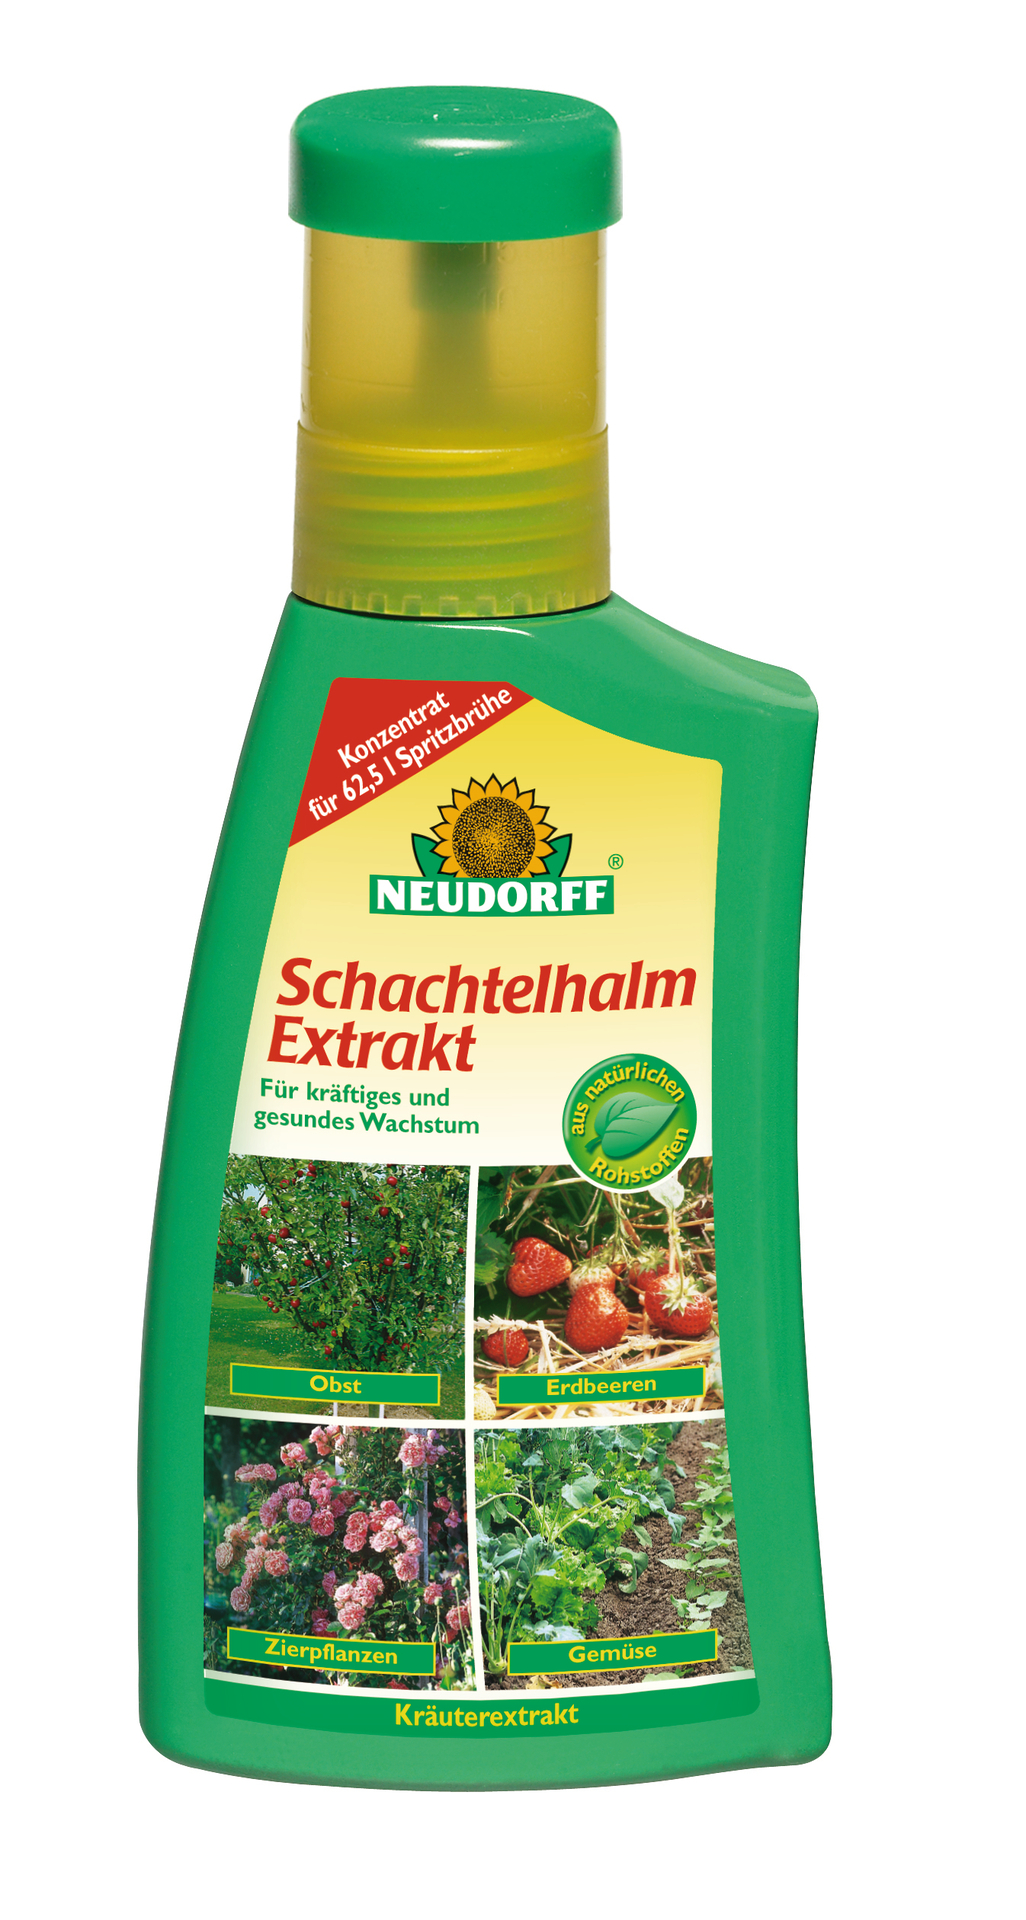 W. Neudorff GmbH KG Schachtelhalm Extrakt